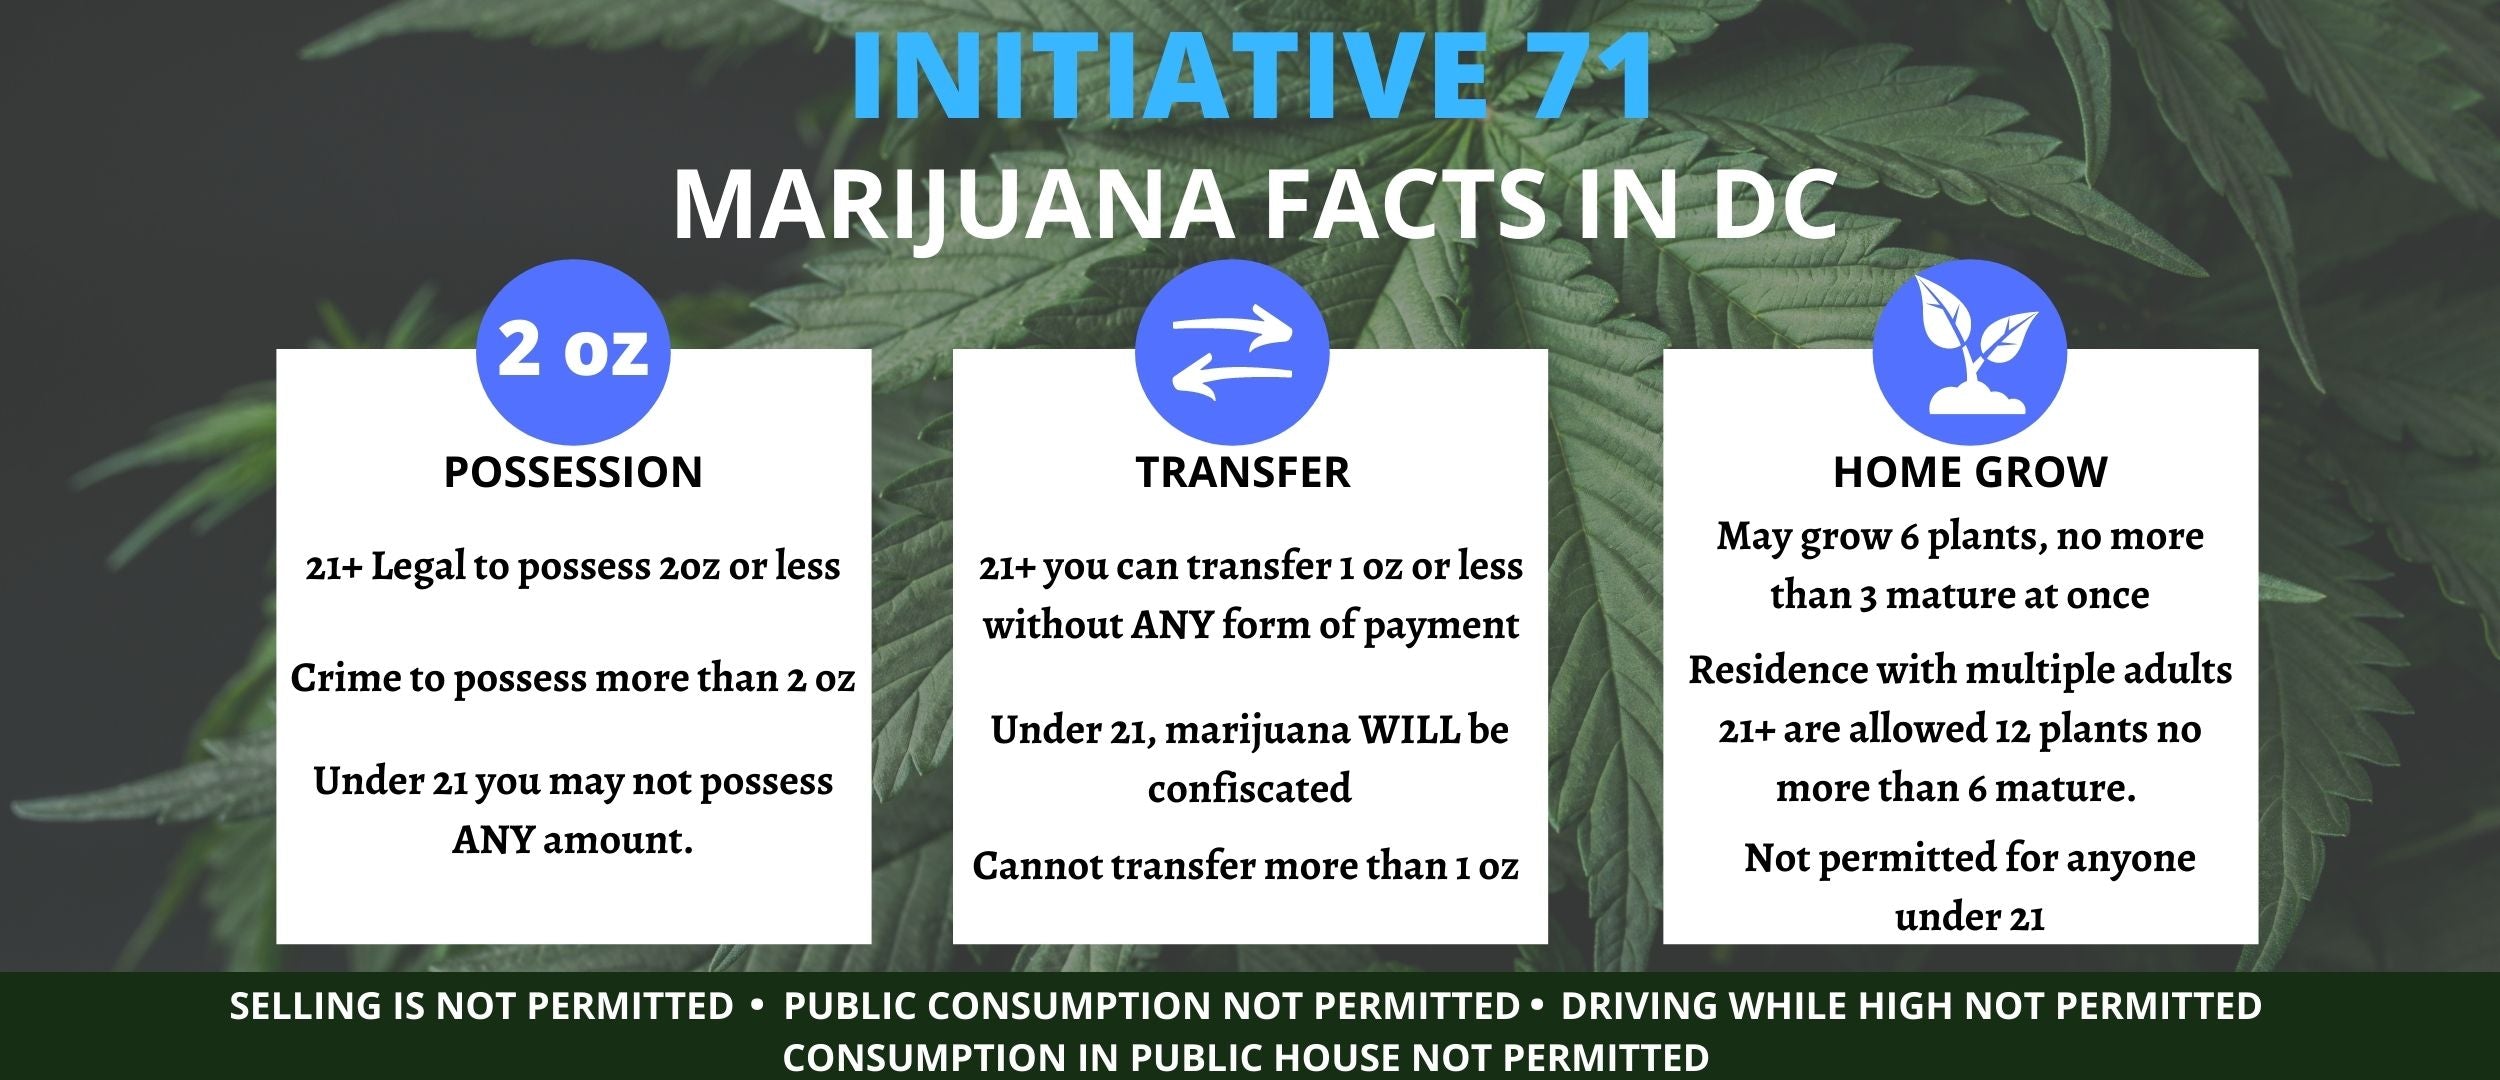 initiative 71 marijuana facts in dc